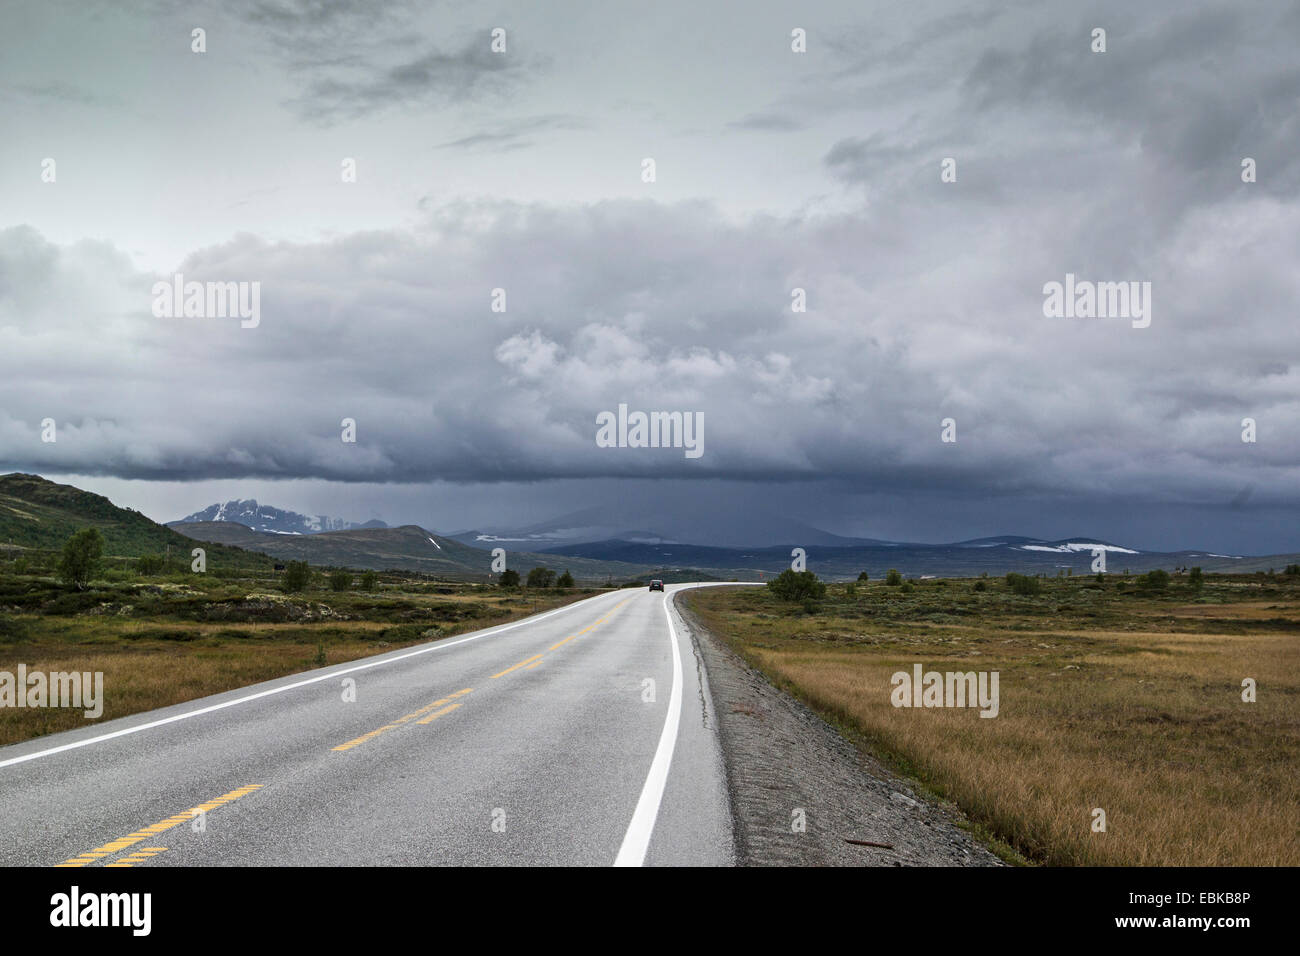 Nuages de pluie sur route de campagne, la Norvège, le Parc National de Dovrefjell Sunndalsfjella, Kongsvoll Banque D'Images